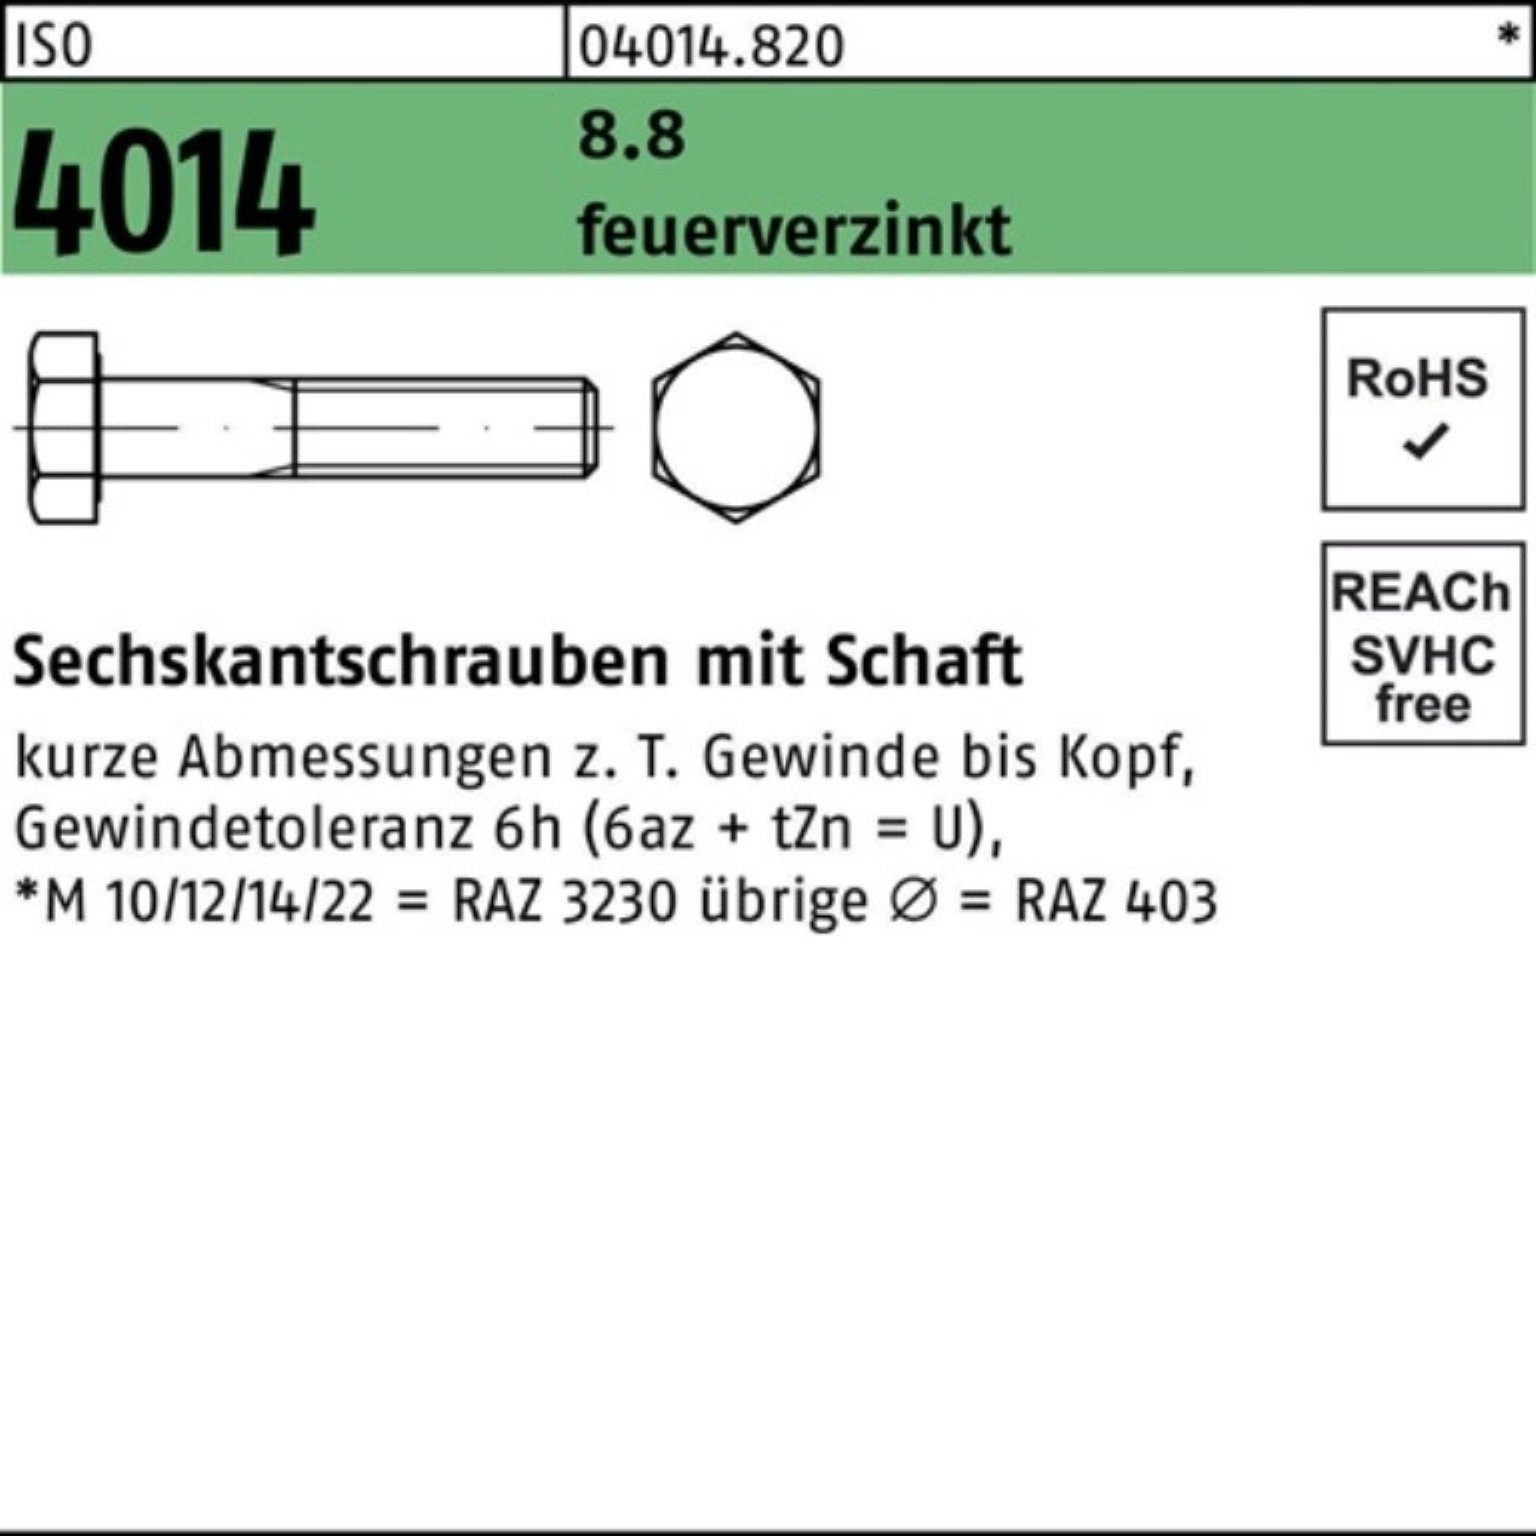 beliebte Marken Bufab Sechskantschraube 100er Sechskantschraube feuerverz. 90 8.8 Pack M10x ISO Schaft 4014 10